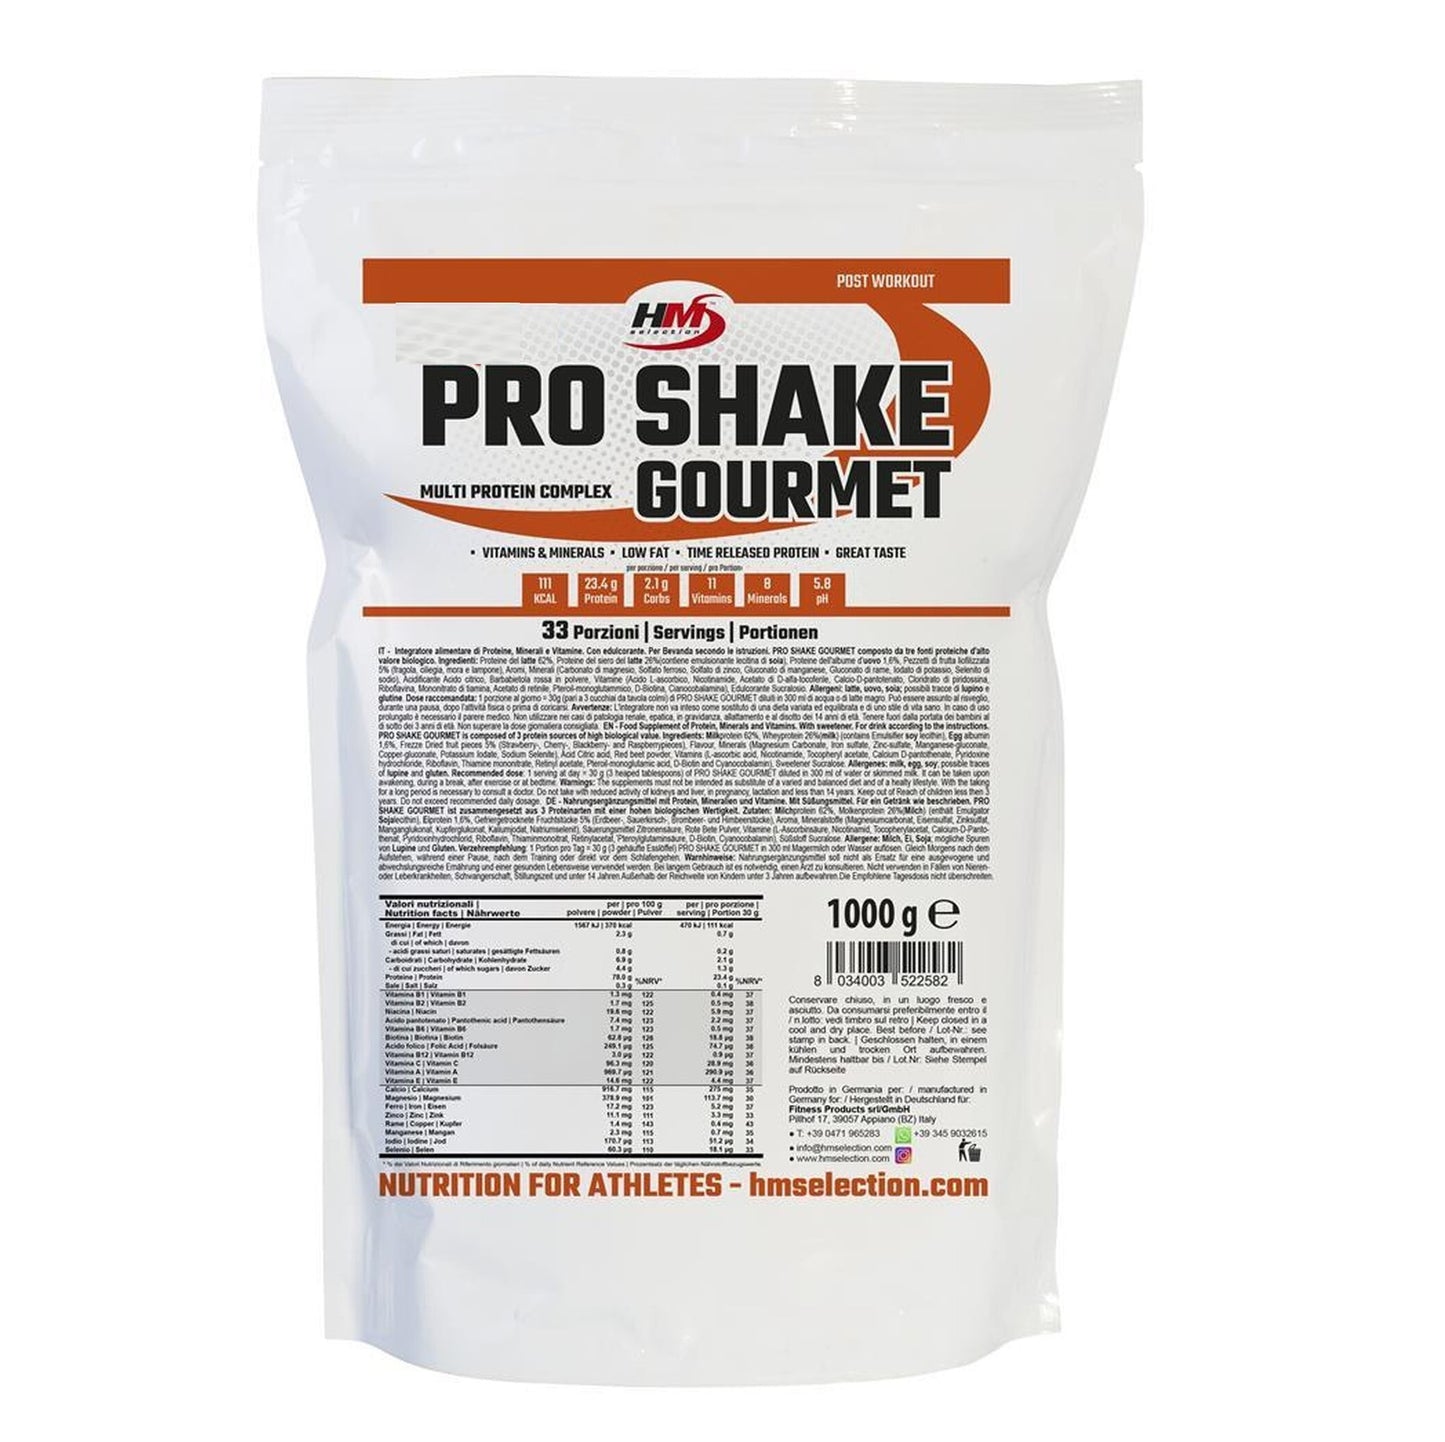 PRO SHAKE GOURMET, 1000g - multi protein complex, puro piacere con più proteine